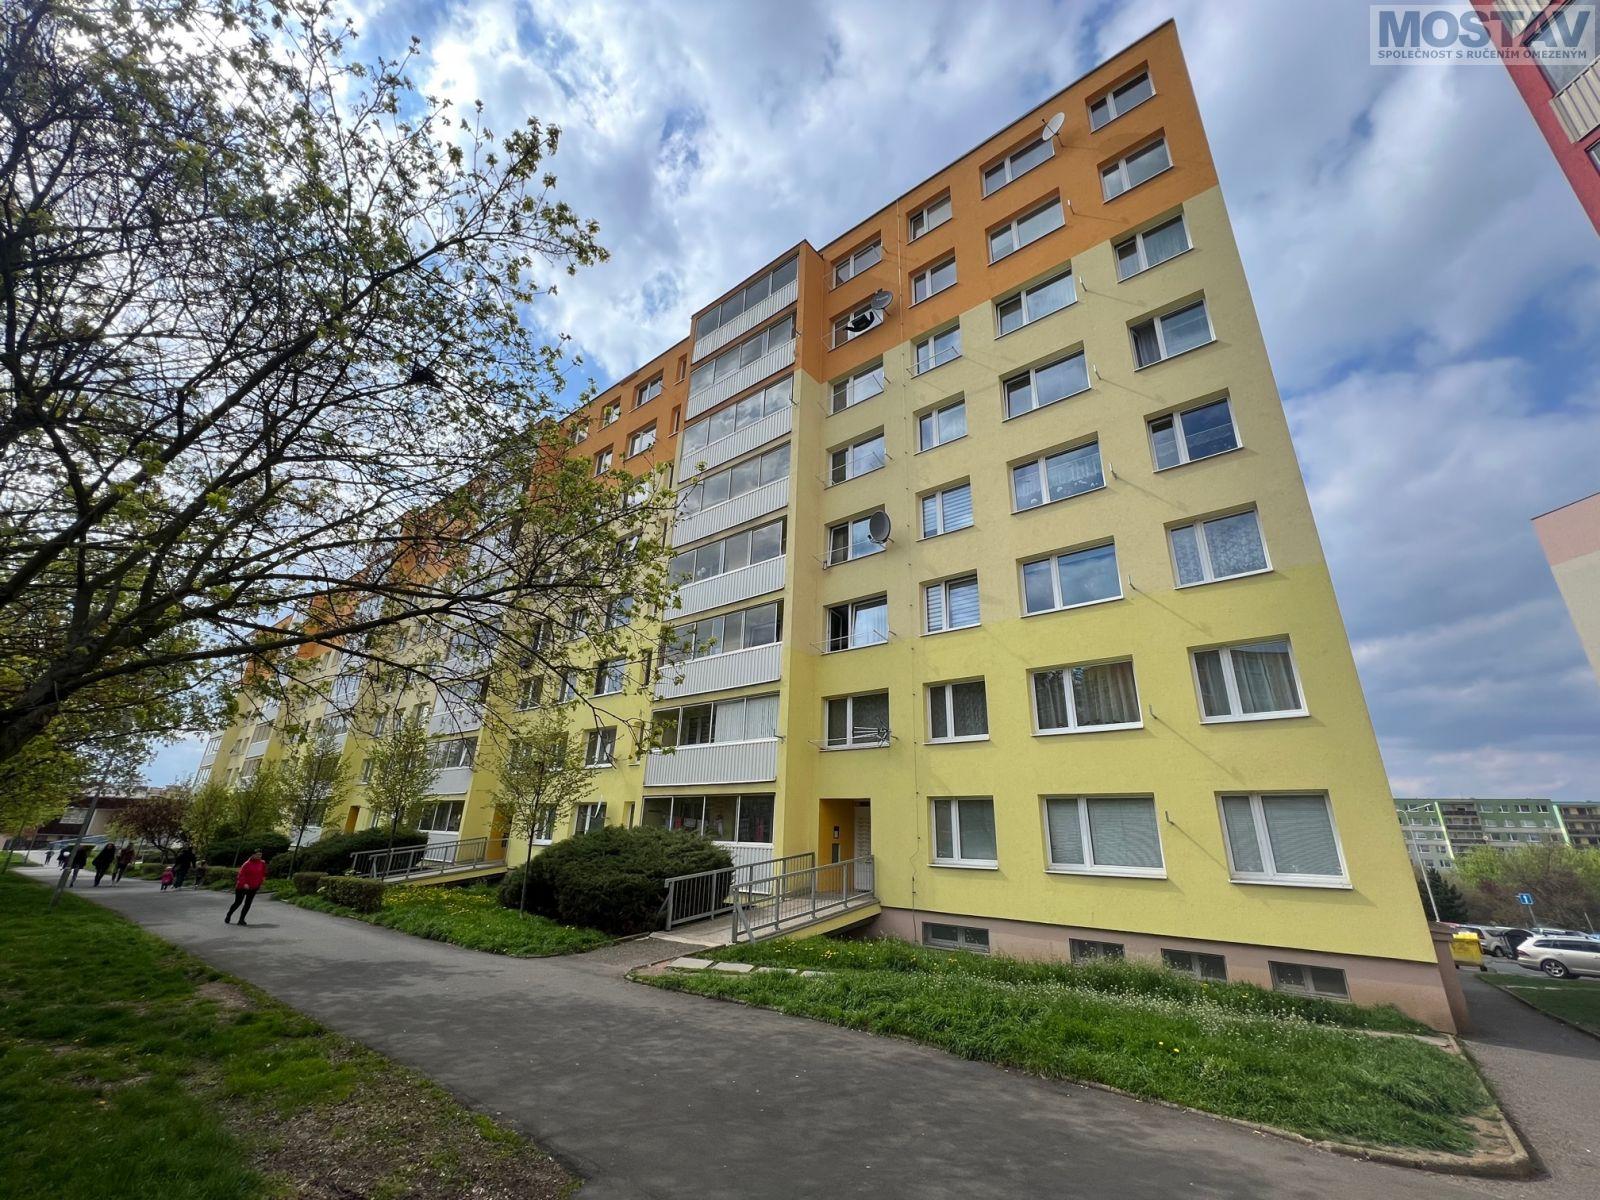 Prodej, byt 3+1, DV, Most, ul.Josefa Ševčíka